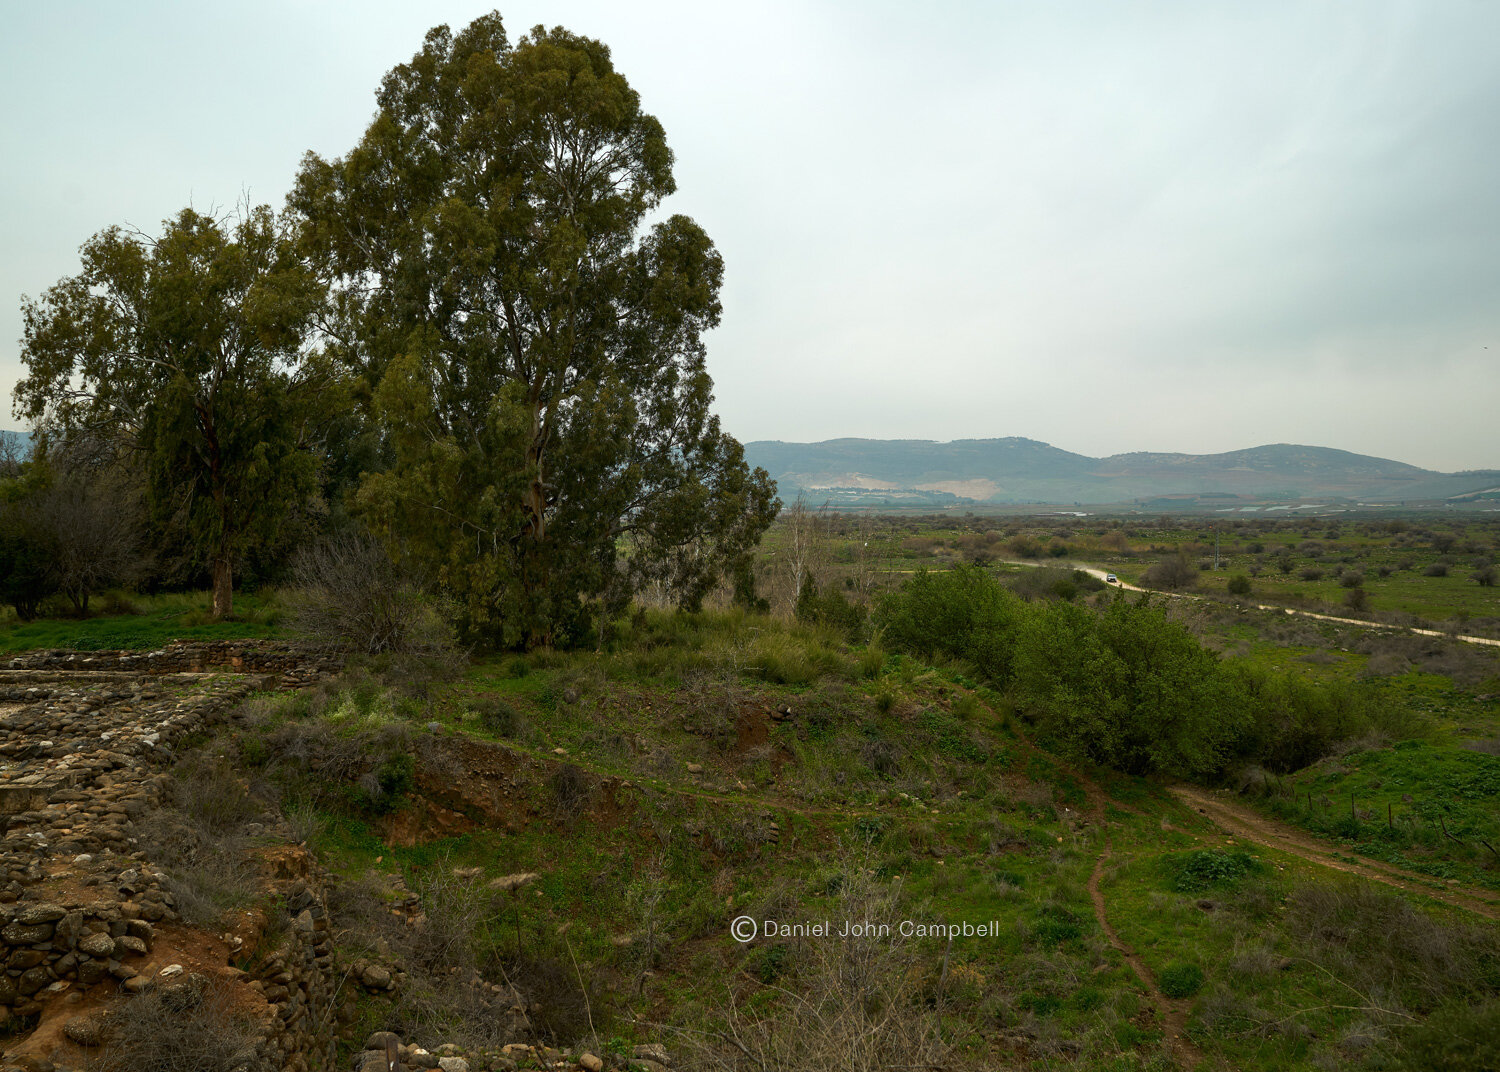 Tel Dan National Park, Israel